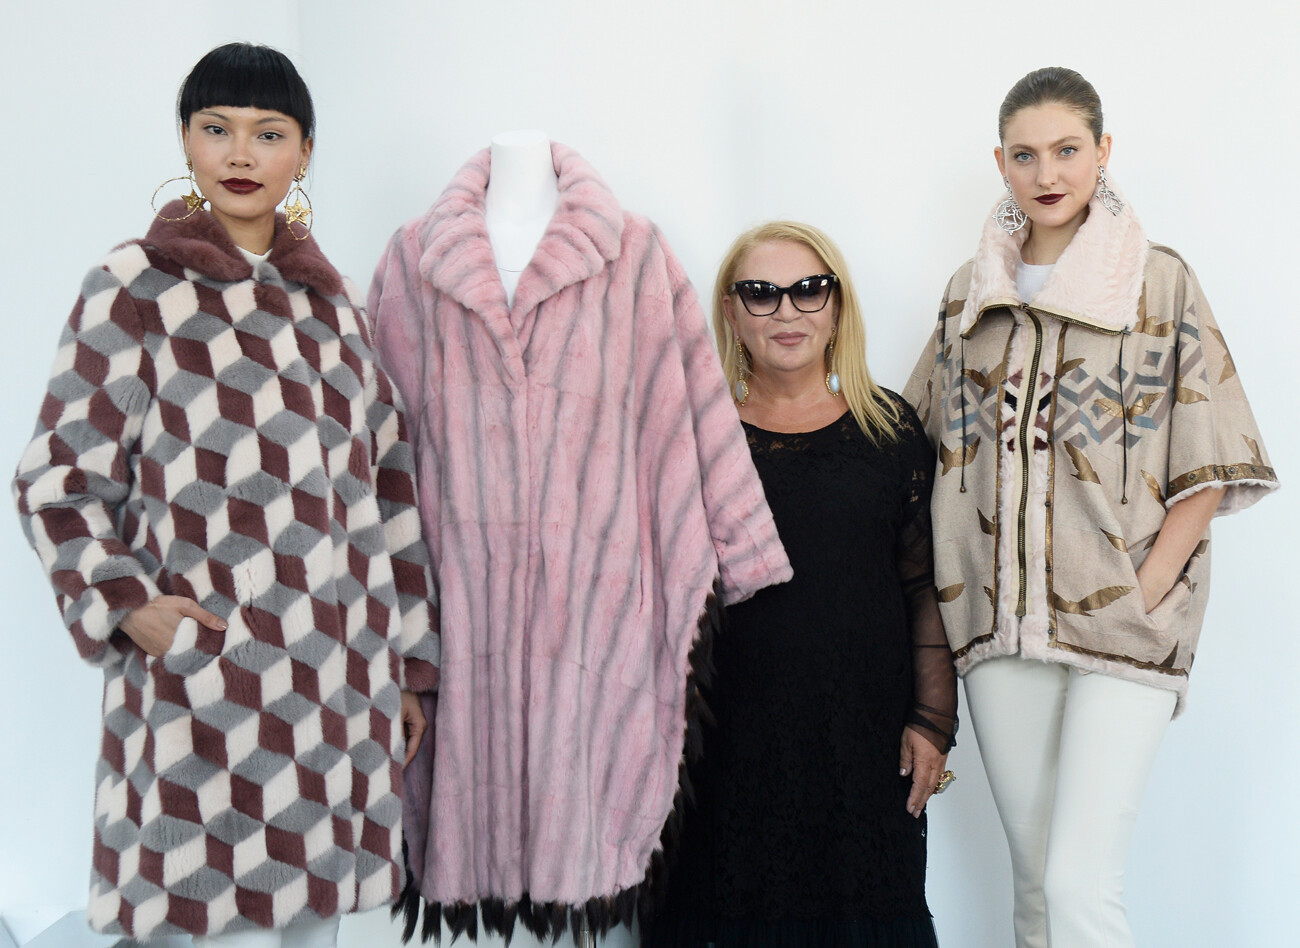 Modelle in posa con la stilista (al centro) alla presentazione dei capi del marchio “Helen Yarmak” alla New York Fashion Week, 2016